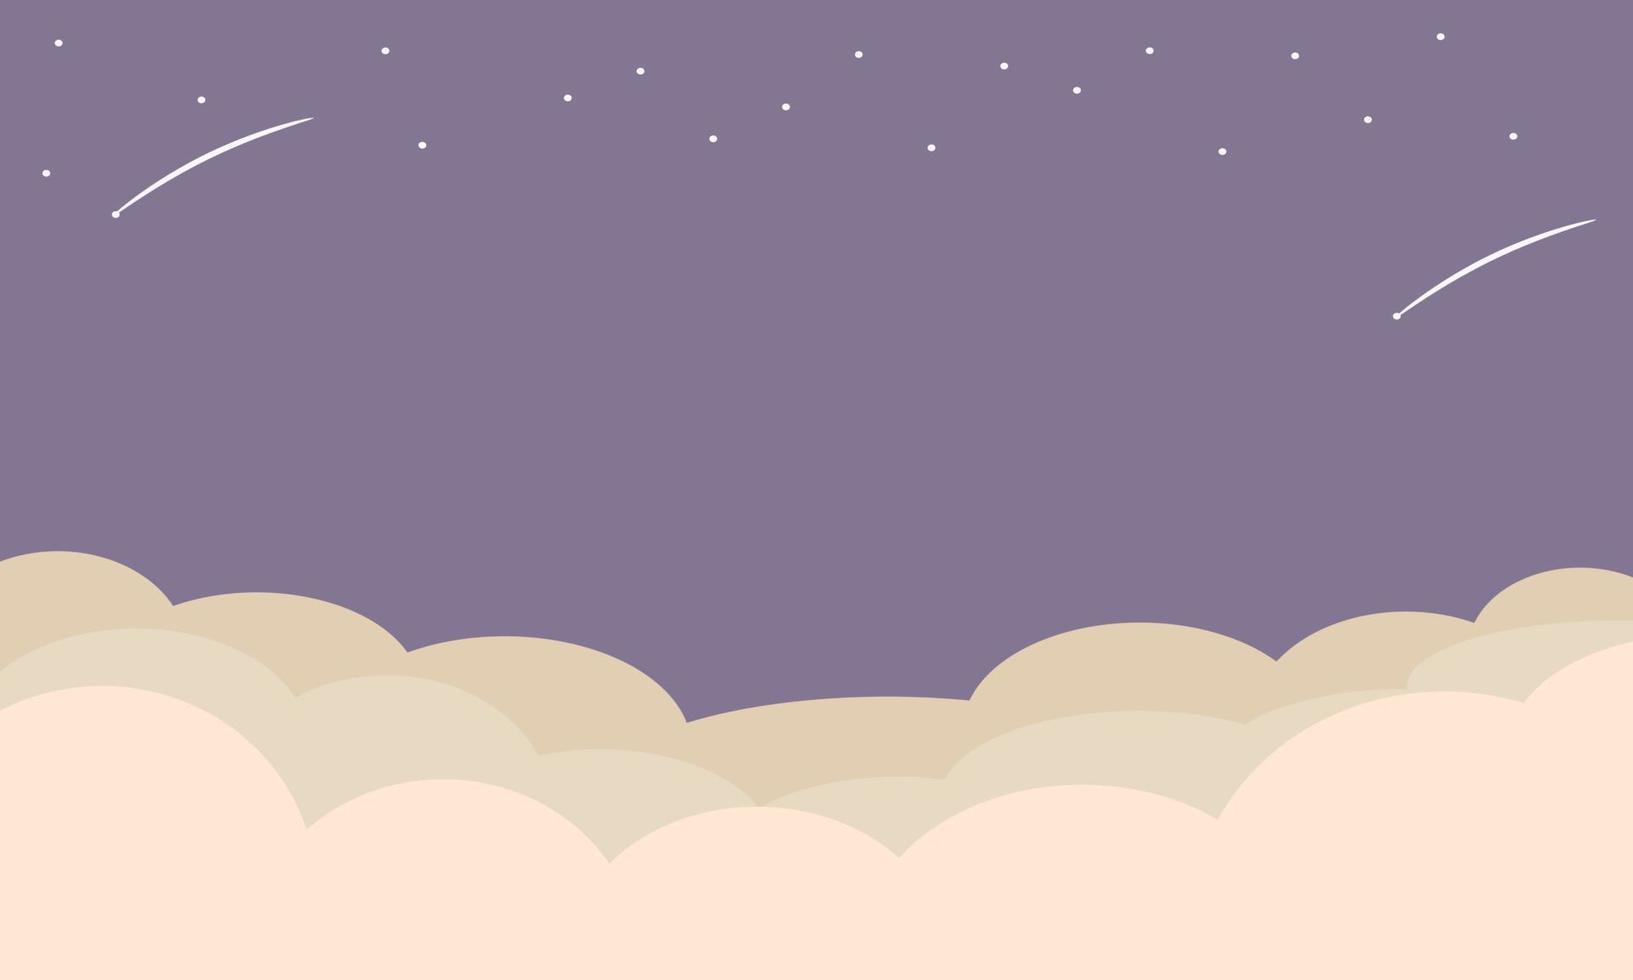 ästhetisch Hintergrund. Abbildungen von Wolken, Sterne und Himmel mit lila Abstufungen. geeignet zum Tapeten, Präsentation Hintergründe, und verschiedene andere Design braucht. vektor